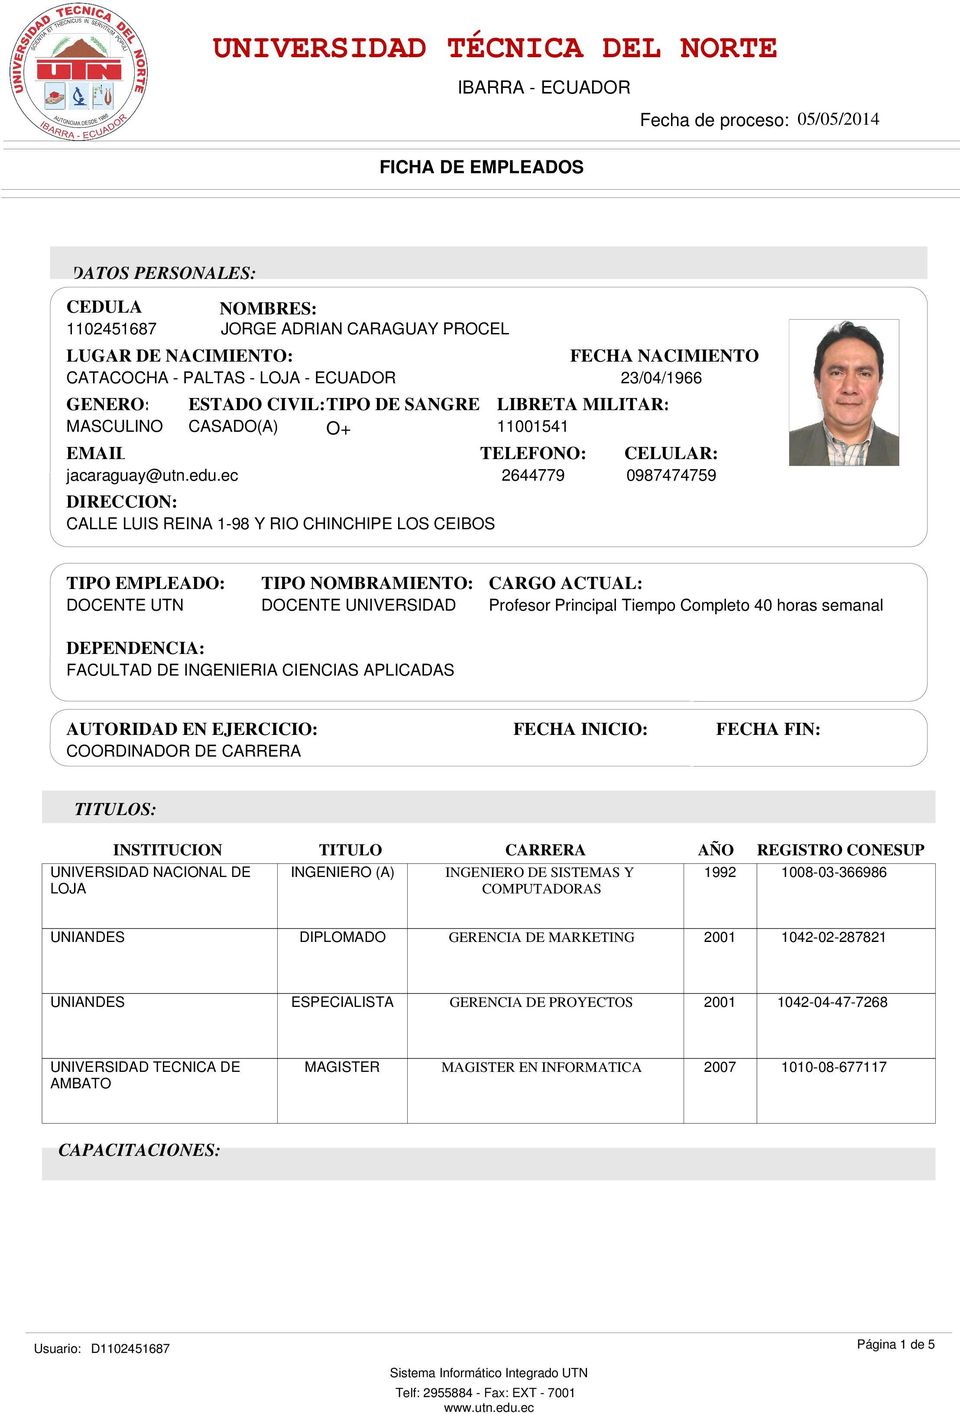 ec 24779 097474759 DIRECCION: CALLE LUIS REINA 1-9 Y RIO CHINCHIPE LOS CEIBOS FECHA NACIMIENTO 23/04/1966 TIPO EMPLEADO: DOCENTE TIPO NOMBRAMIENTO: DOCENTE UNIVERSIDAD CARGO ACTUAL: Profesor